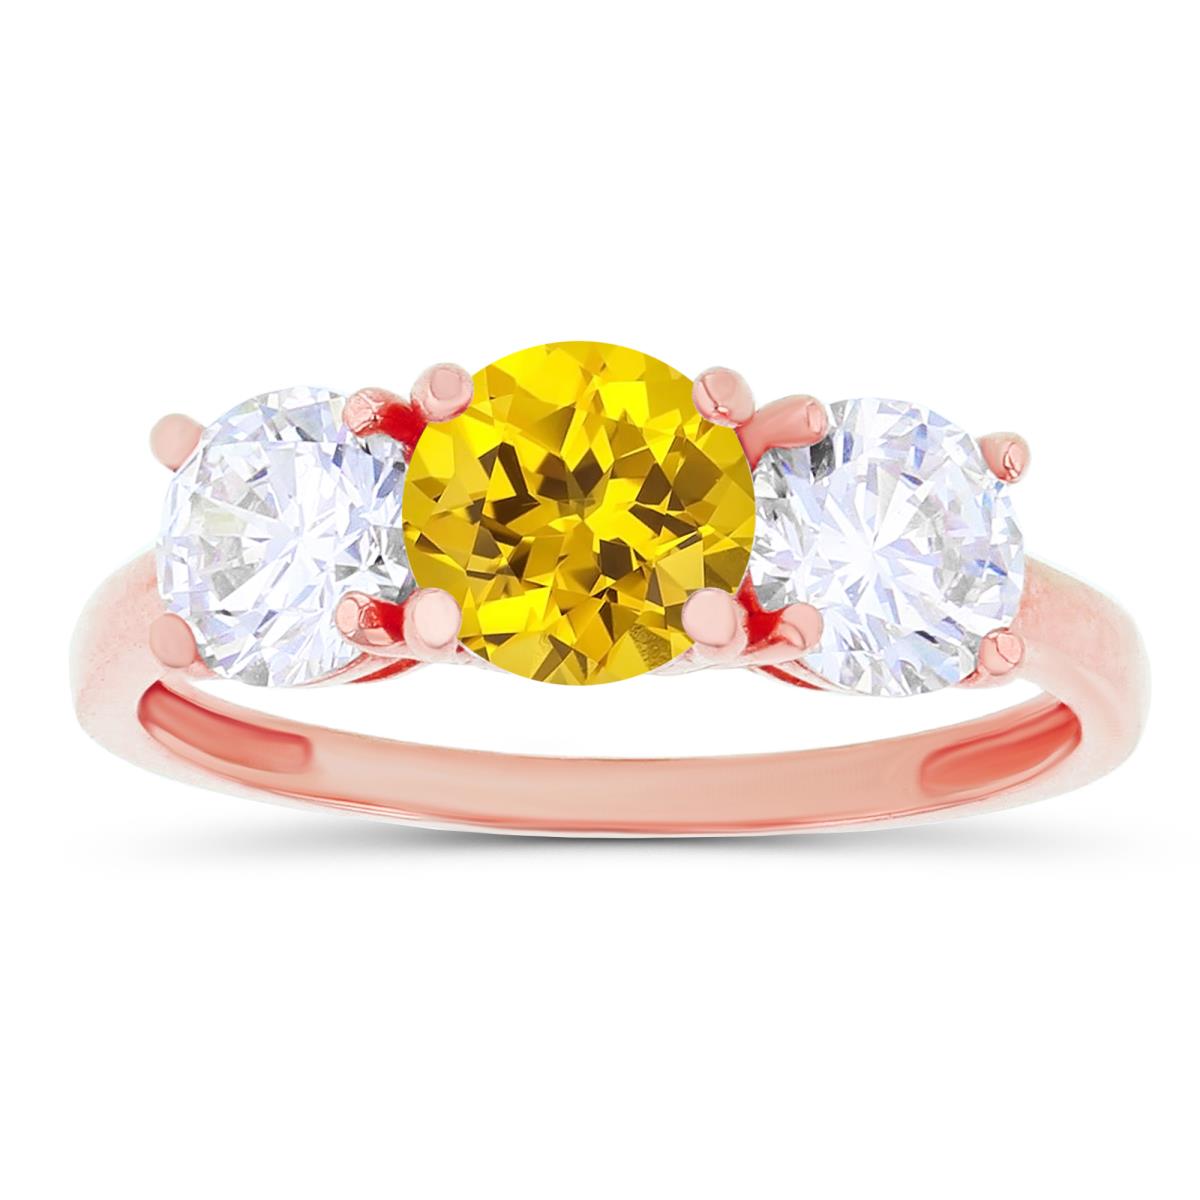 14K Rose Gold 3-Stones Created Yellow Sapphire & Created White Sapphire Anniversary Ring